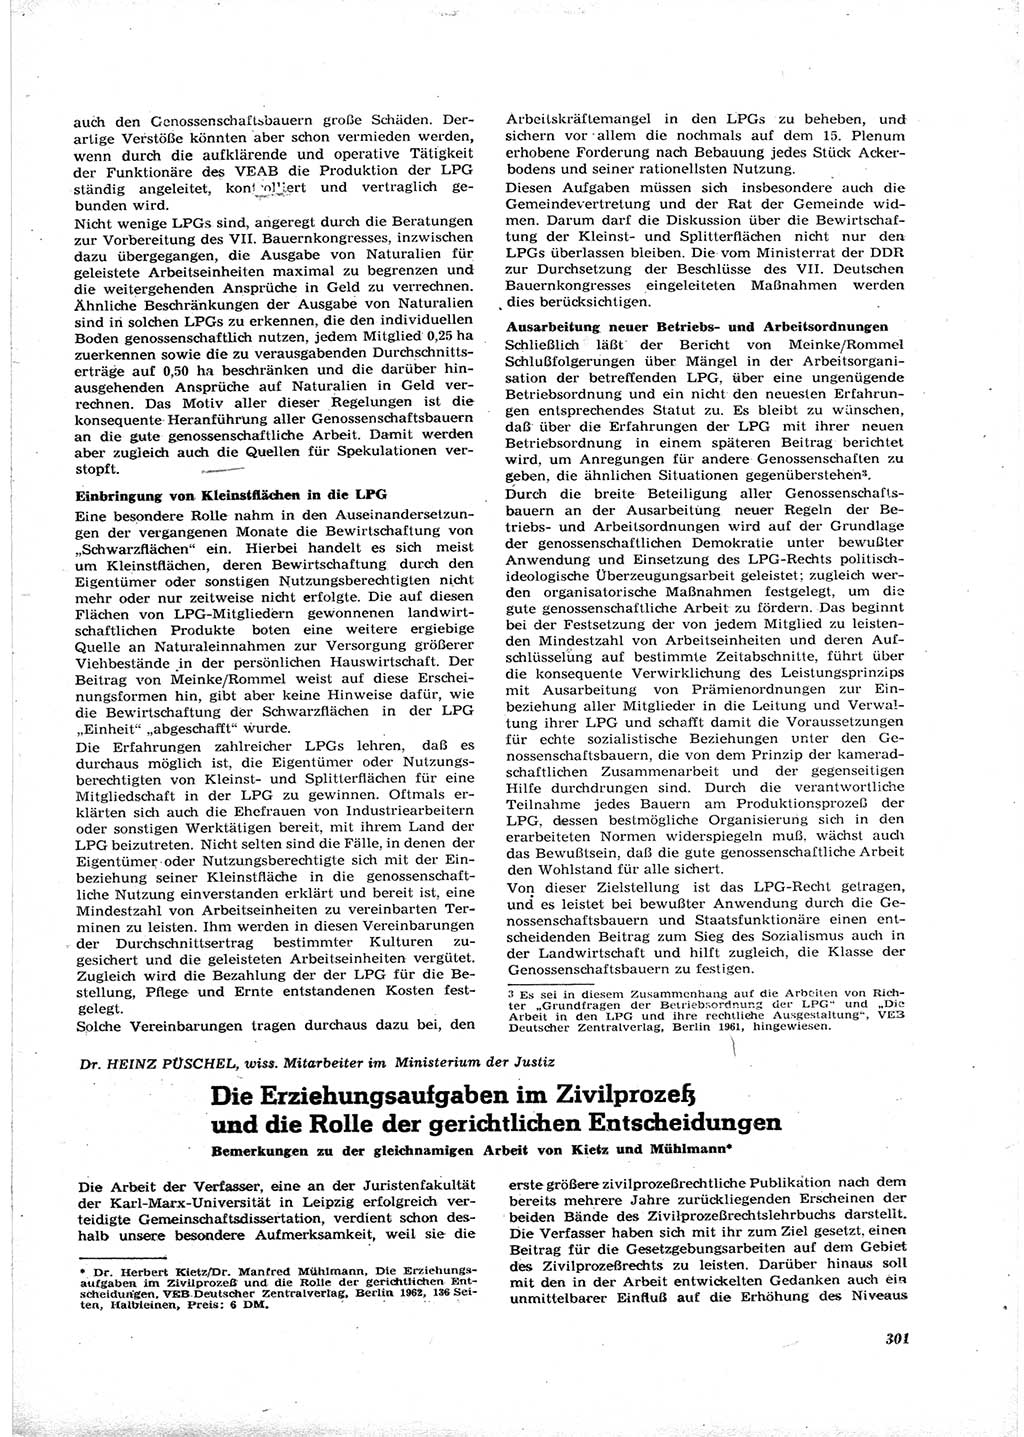 Neue Justiz (NJ), Zeitschrift für Recht und Rechtswissenschaft [Deutsche Demokratische Republik (DDR)], 16. Jahrgang 1962, Seite 301 (NJ DDR 1962, S. 301)